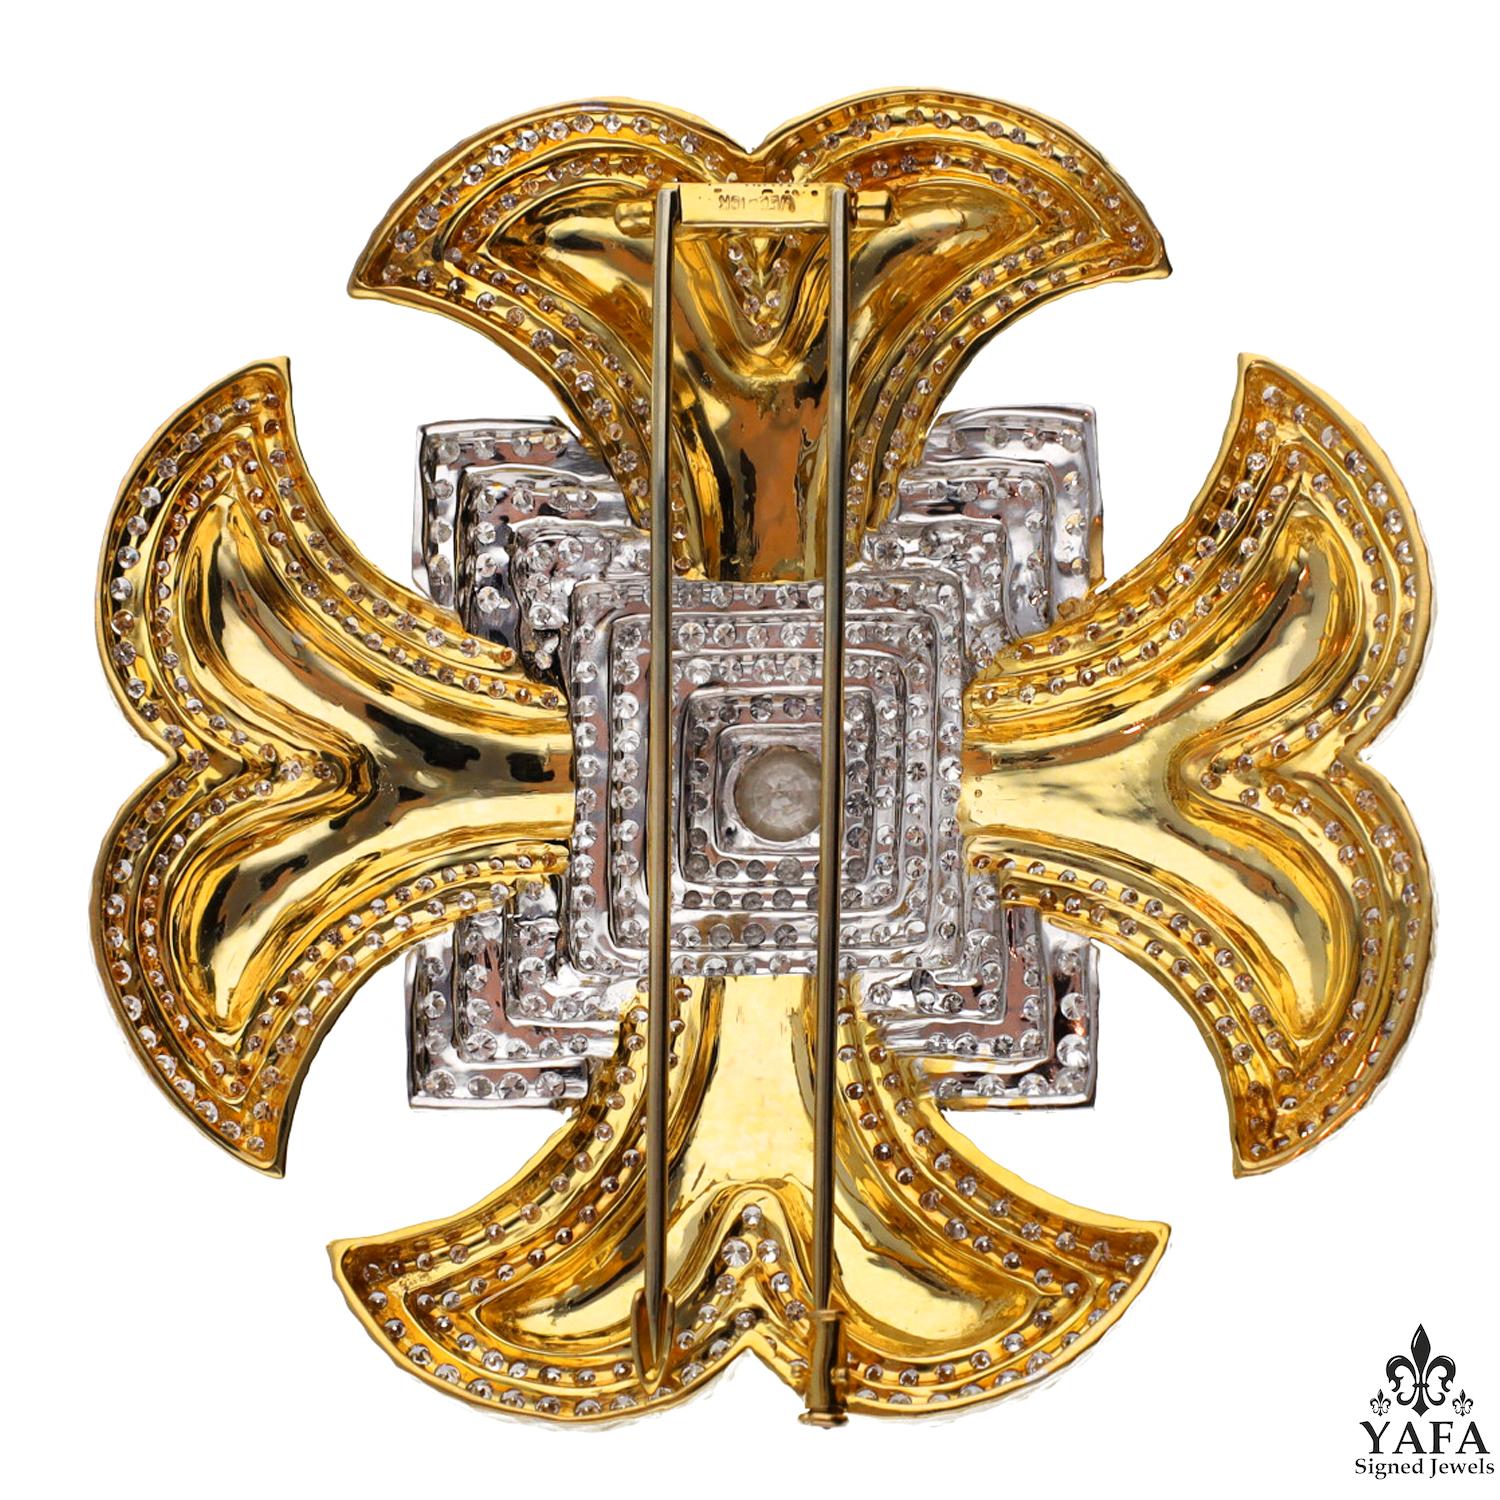 DAVID WEBB Broche Croix de Malte en or jaune 18 carats et platine.

Le motif de la croix de Malte, emblématique de David Webb, est un motif d'or à la texture exquise qui a été décliné sous différentes formes au cours des années de la marque. Le